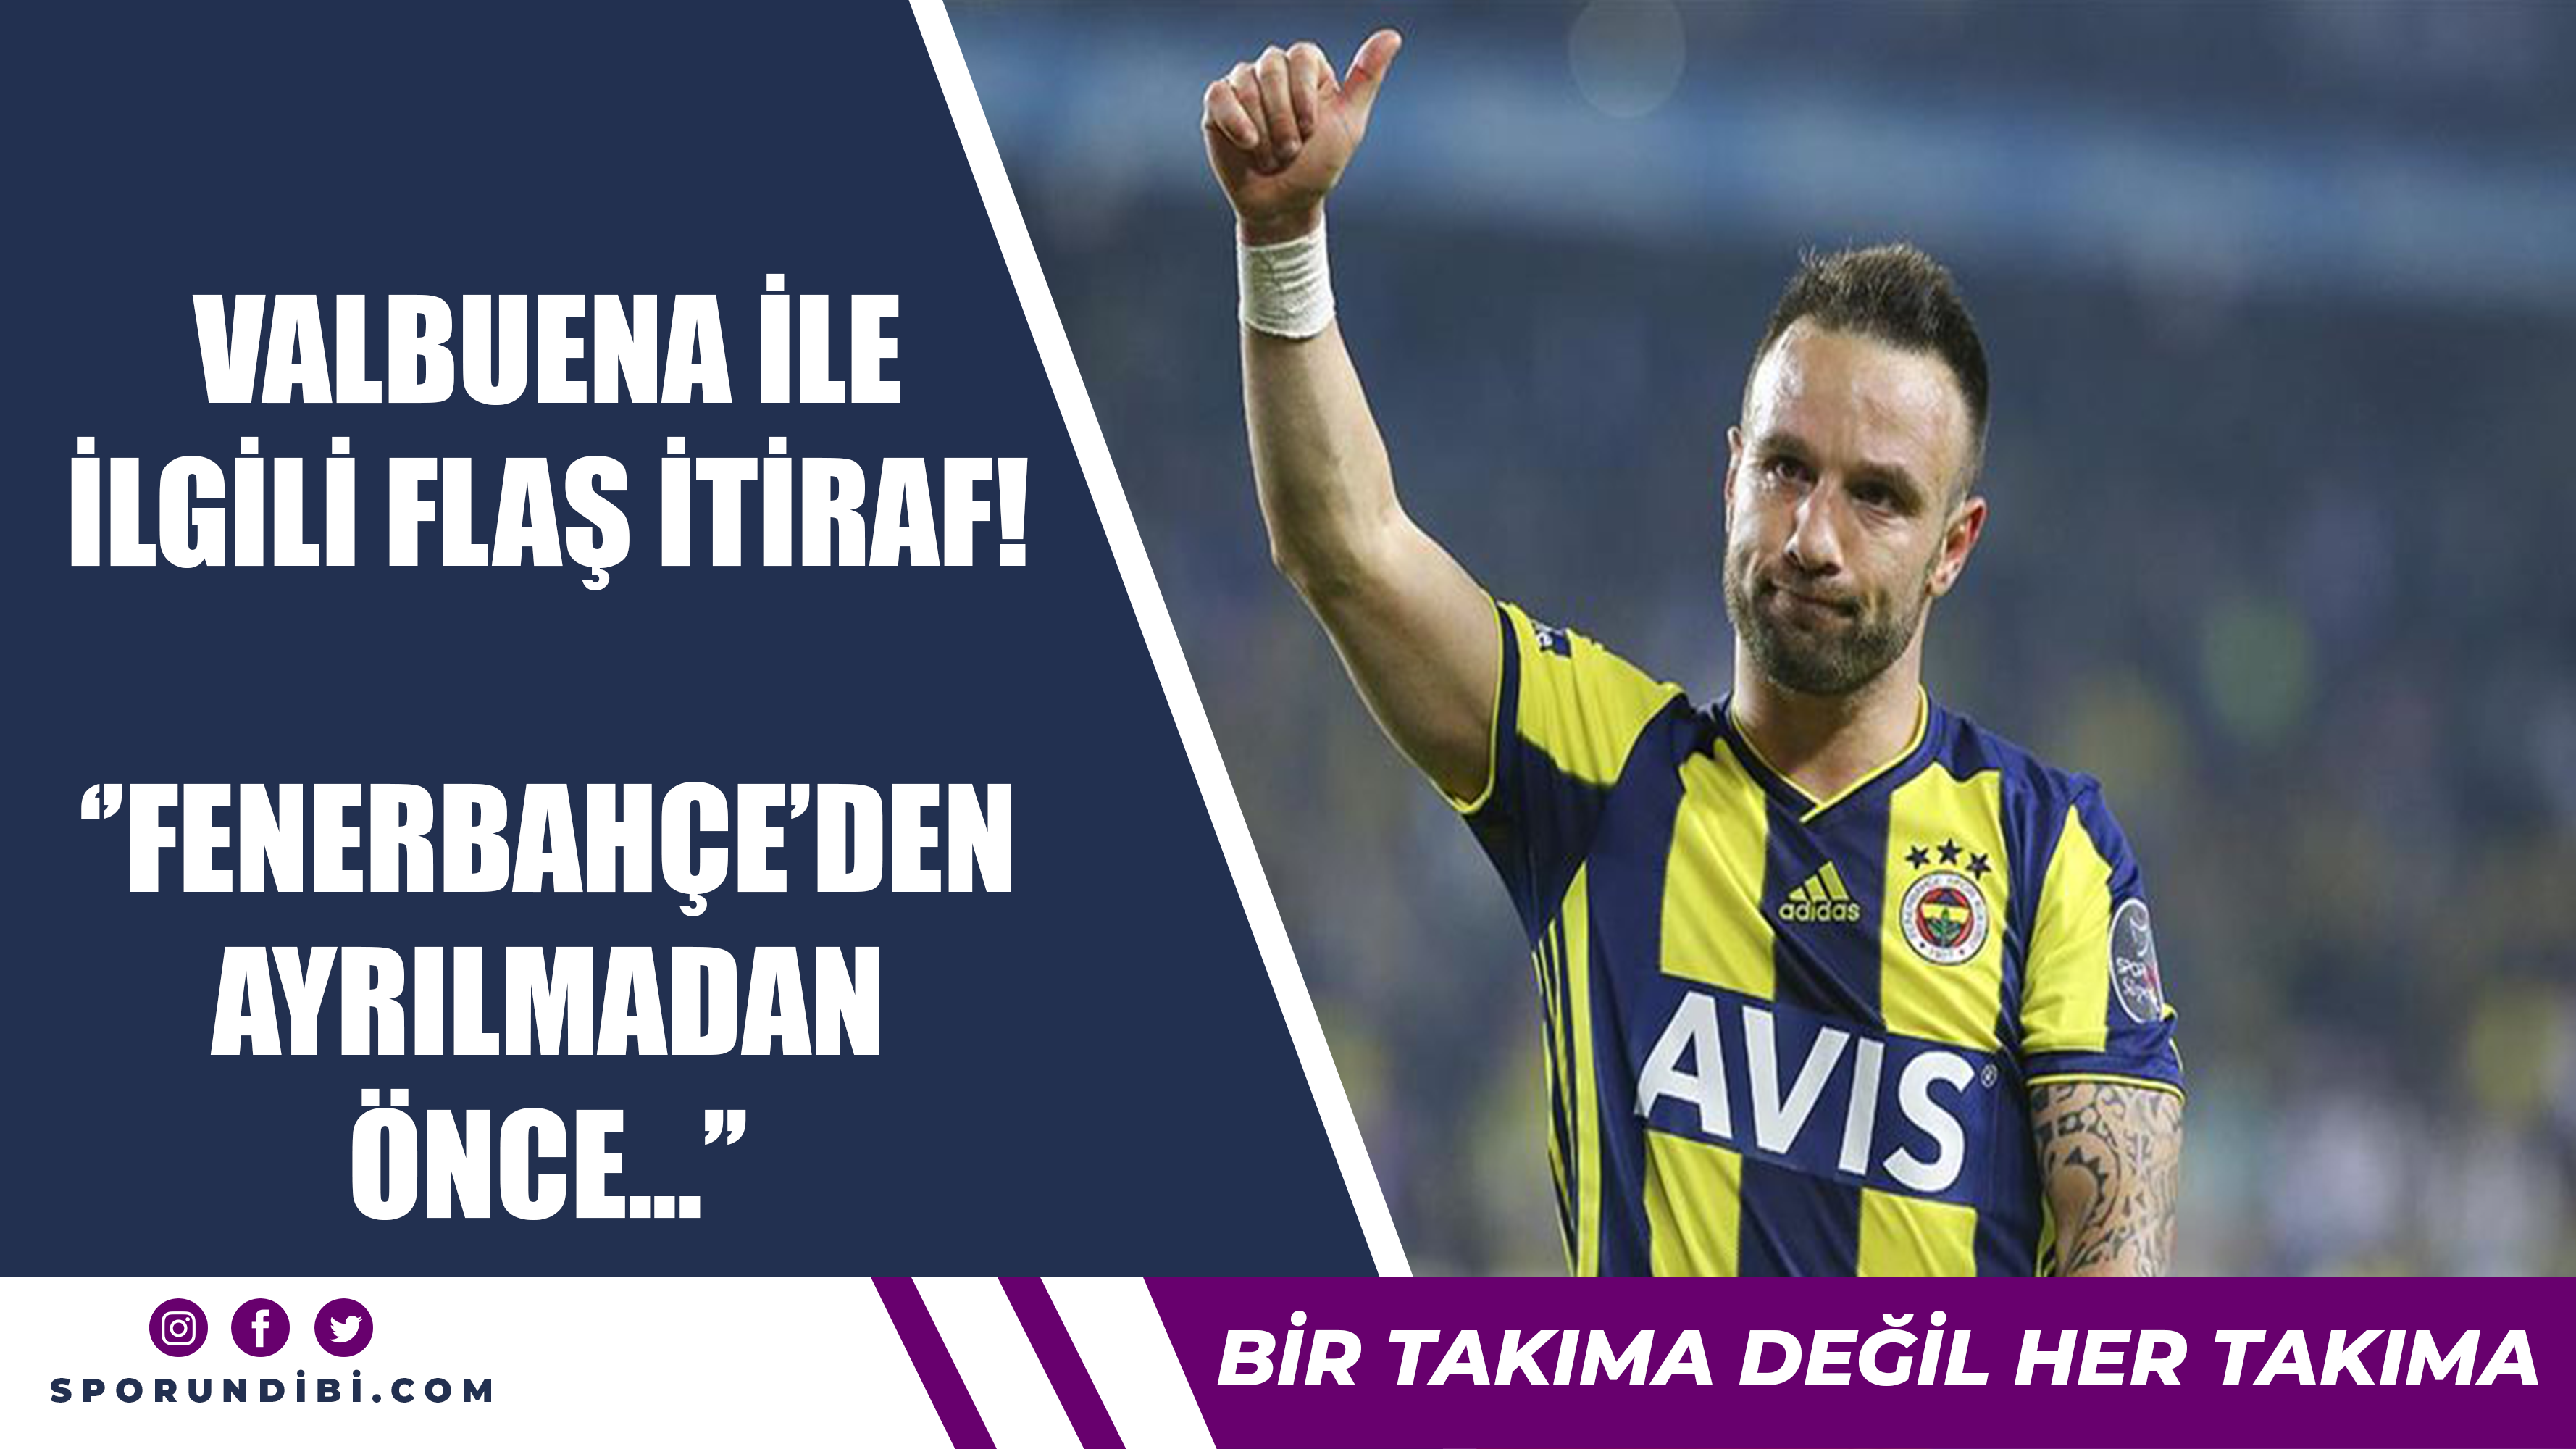 Valbuena ile ilgili flaş itiraf! ''Fenerbahçe'den ayrılmadan önce...''